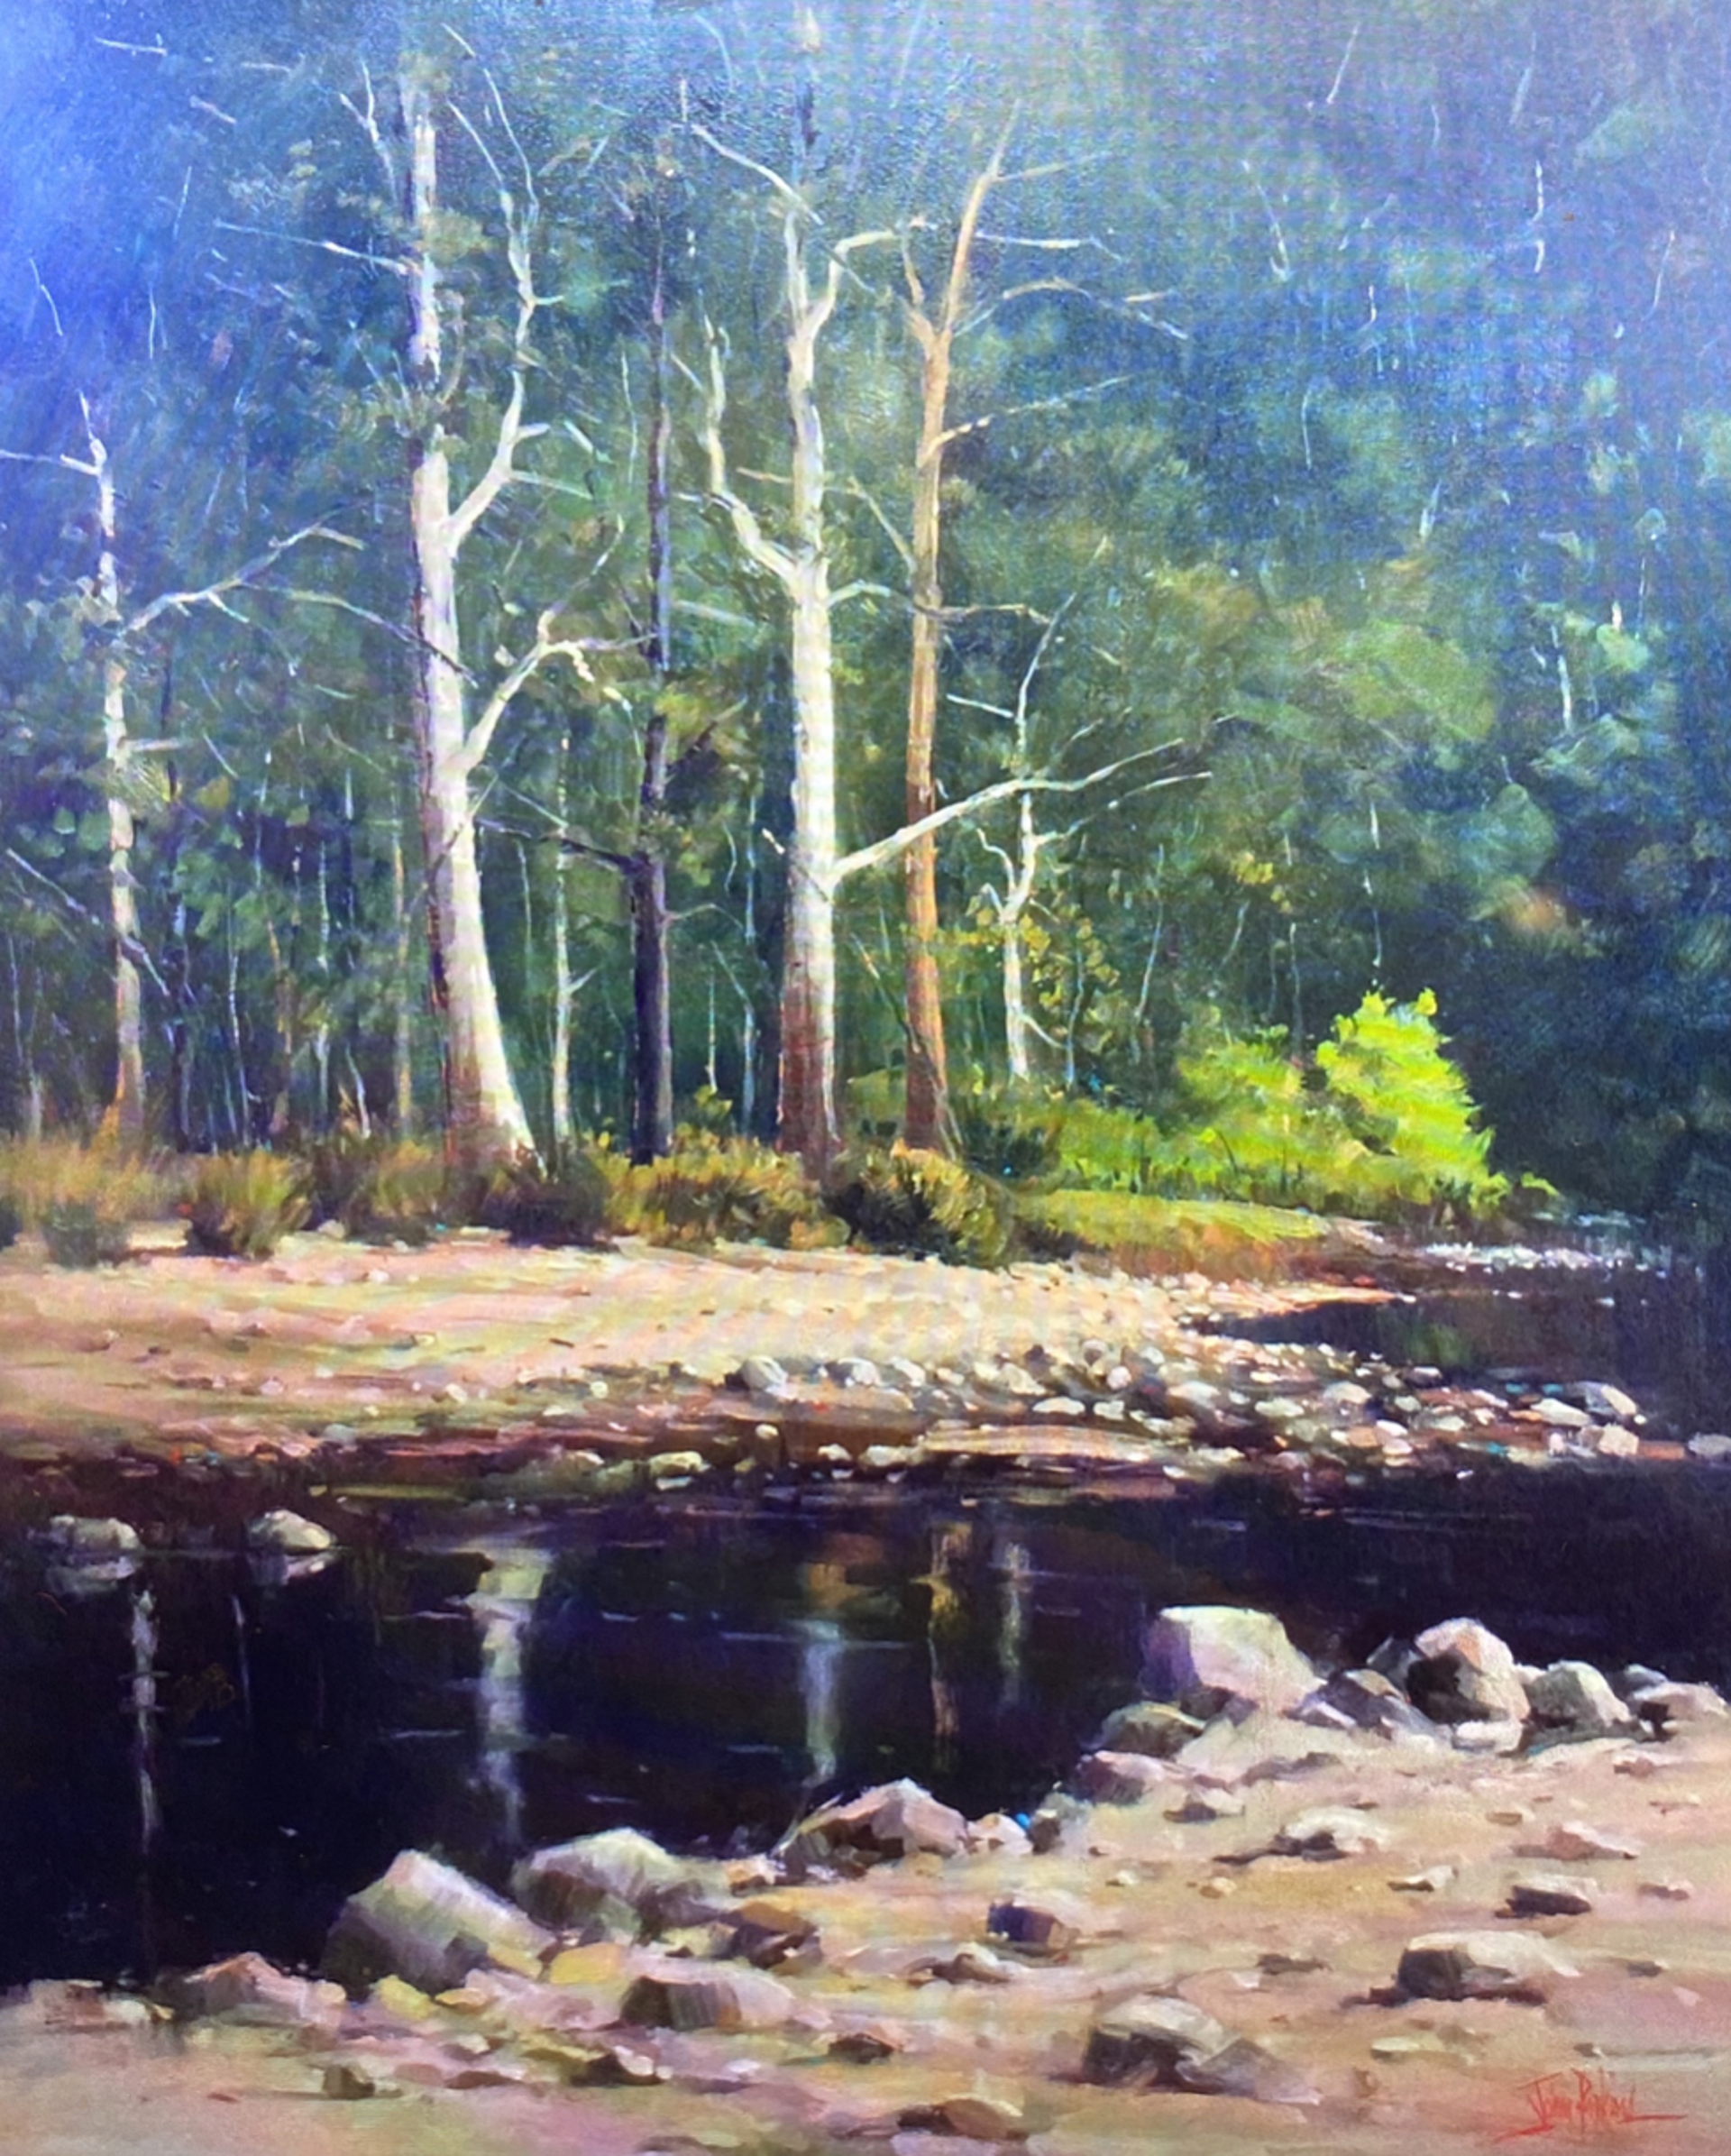 Tallangatta Creek by John Perkins